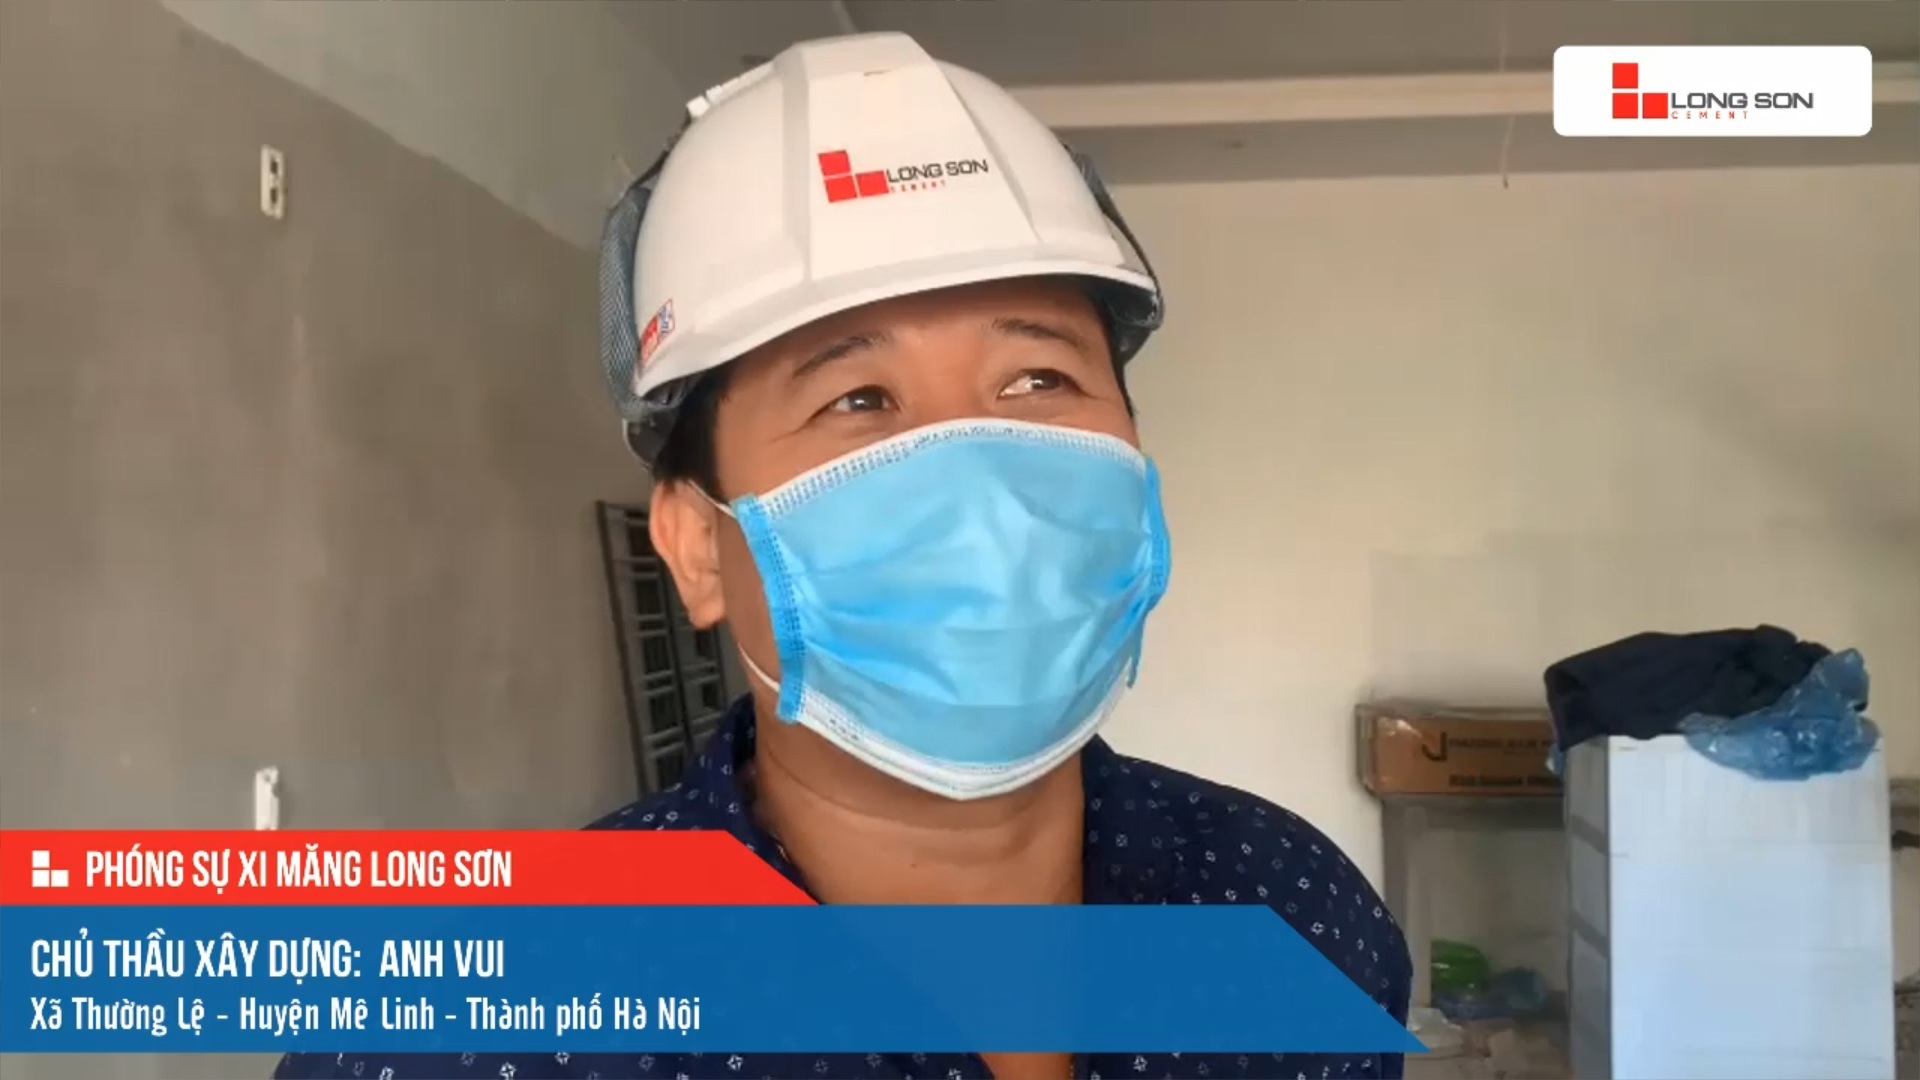 Phóng sự công trình sử dụng Xi măng Long Sơn tại Hà Nội ngày 14/11/2021